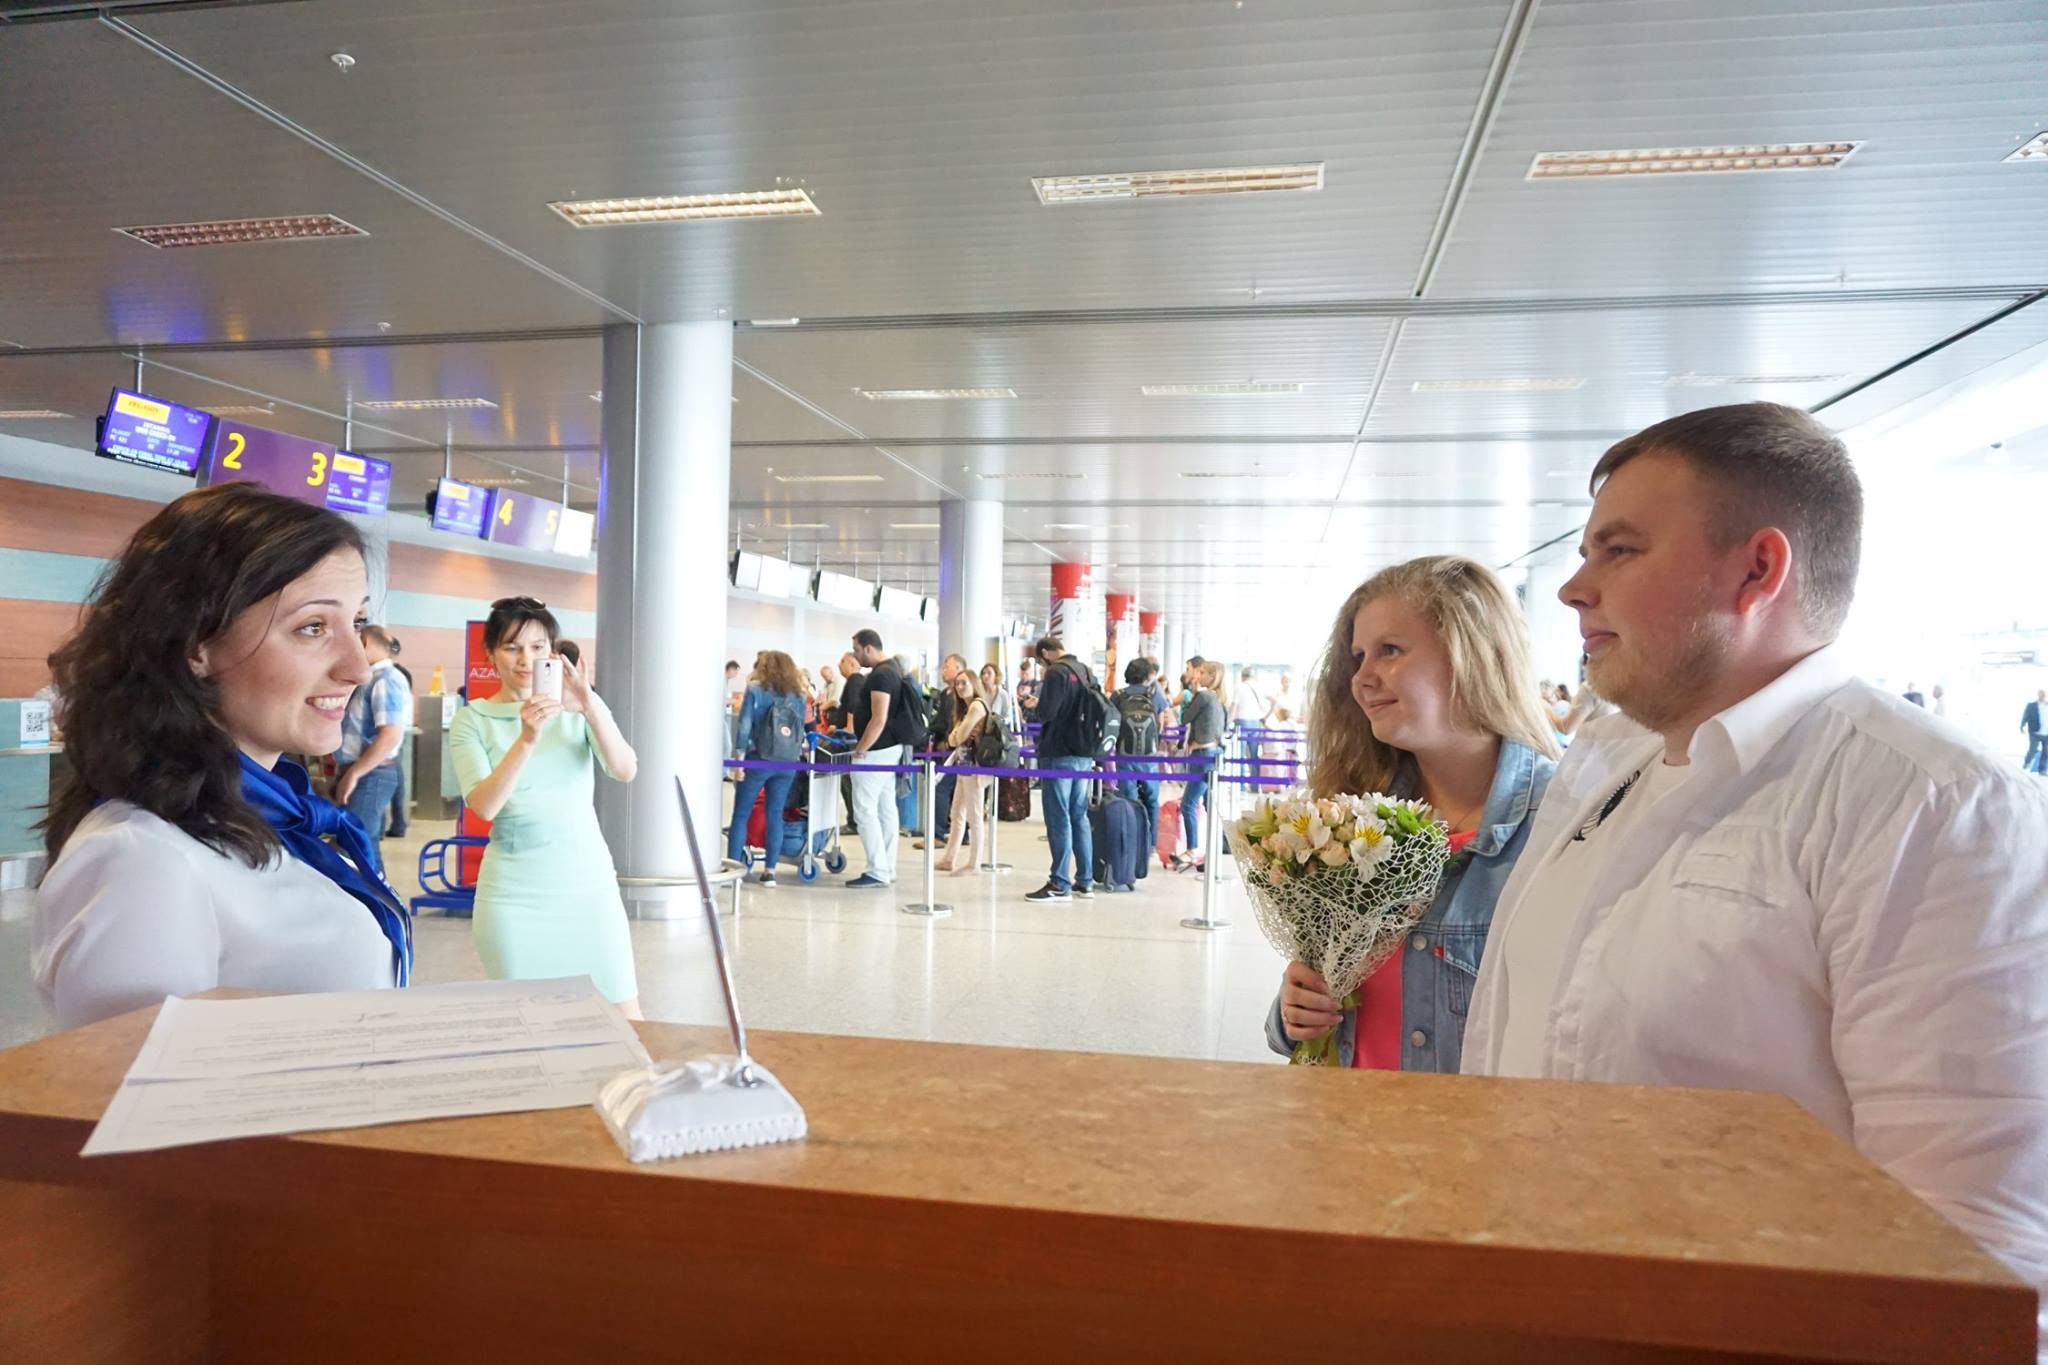 Скільки молодят вирішило одружитися у львівському аеропорті: цікаві цифри